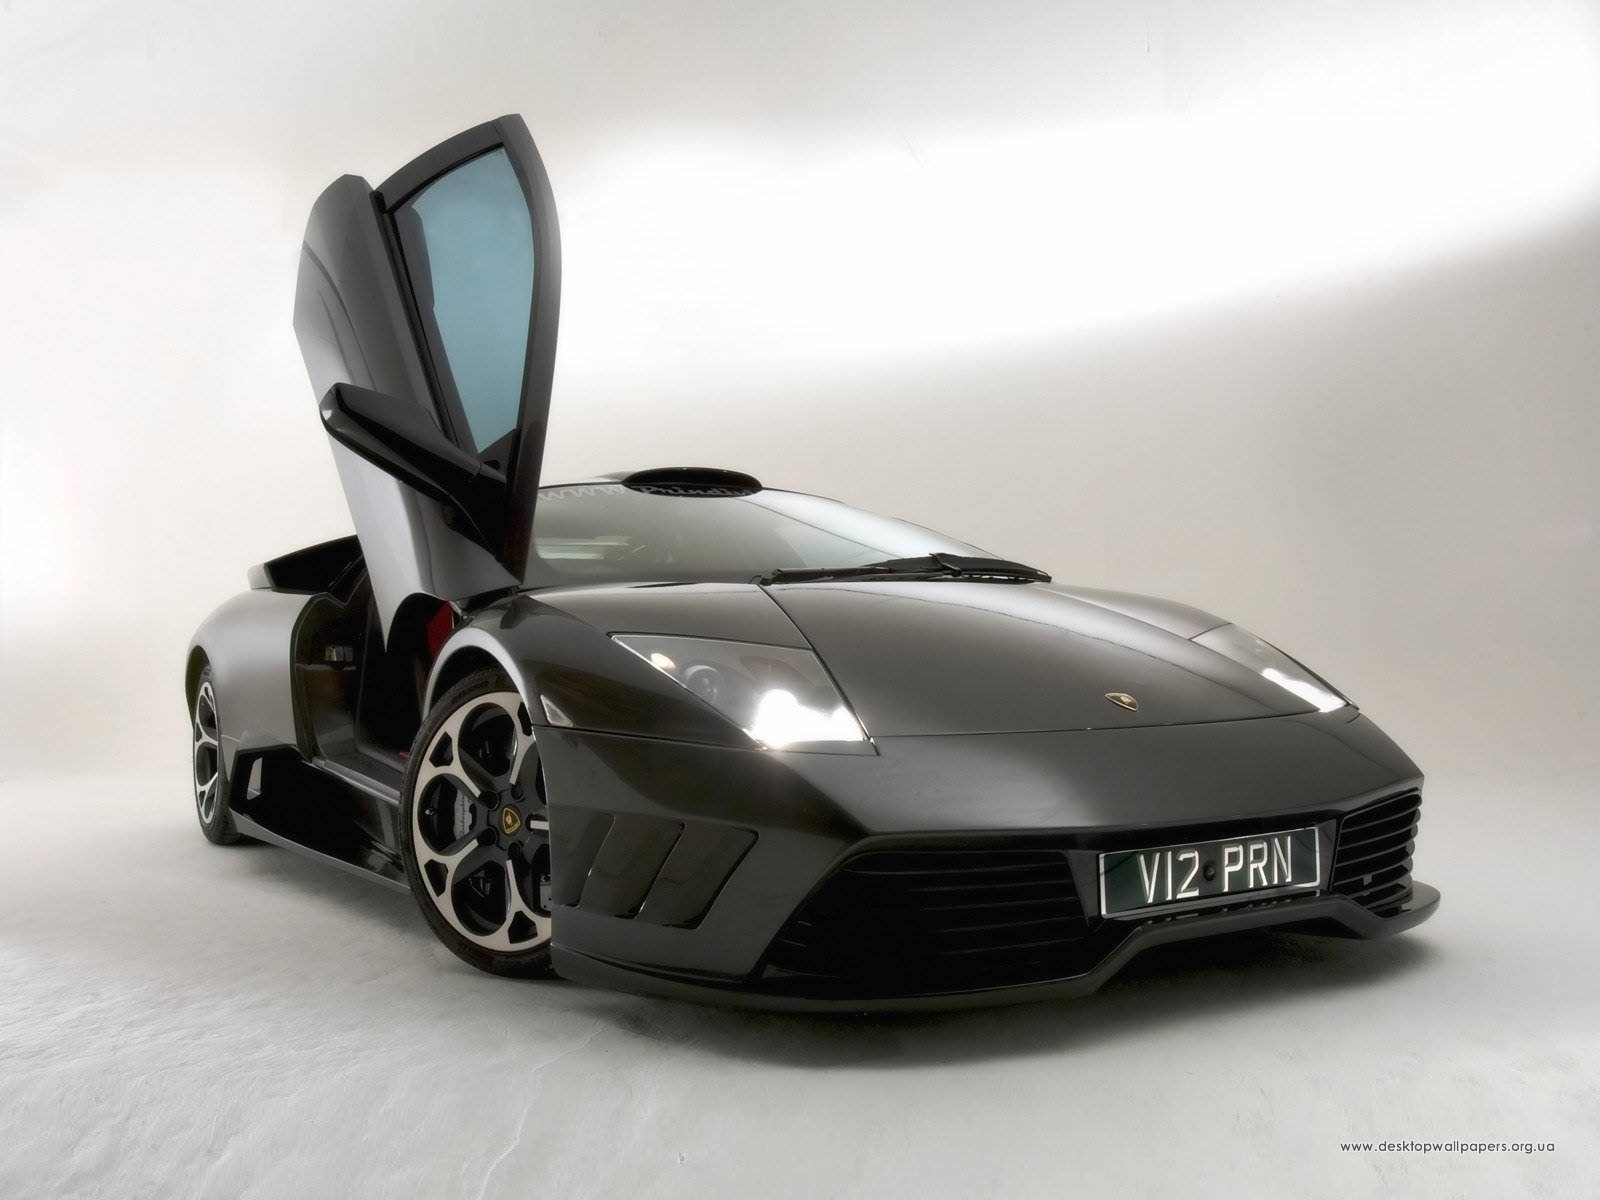 Скачать обои бесплатно Транспорт, Машины, Ламборджини (Lamborghini) картинка на рабочий стол ПК